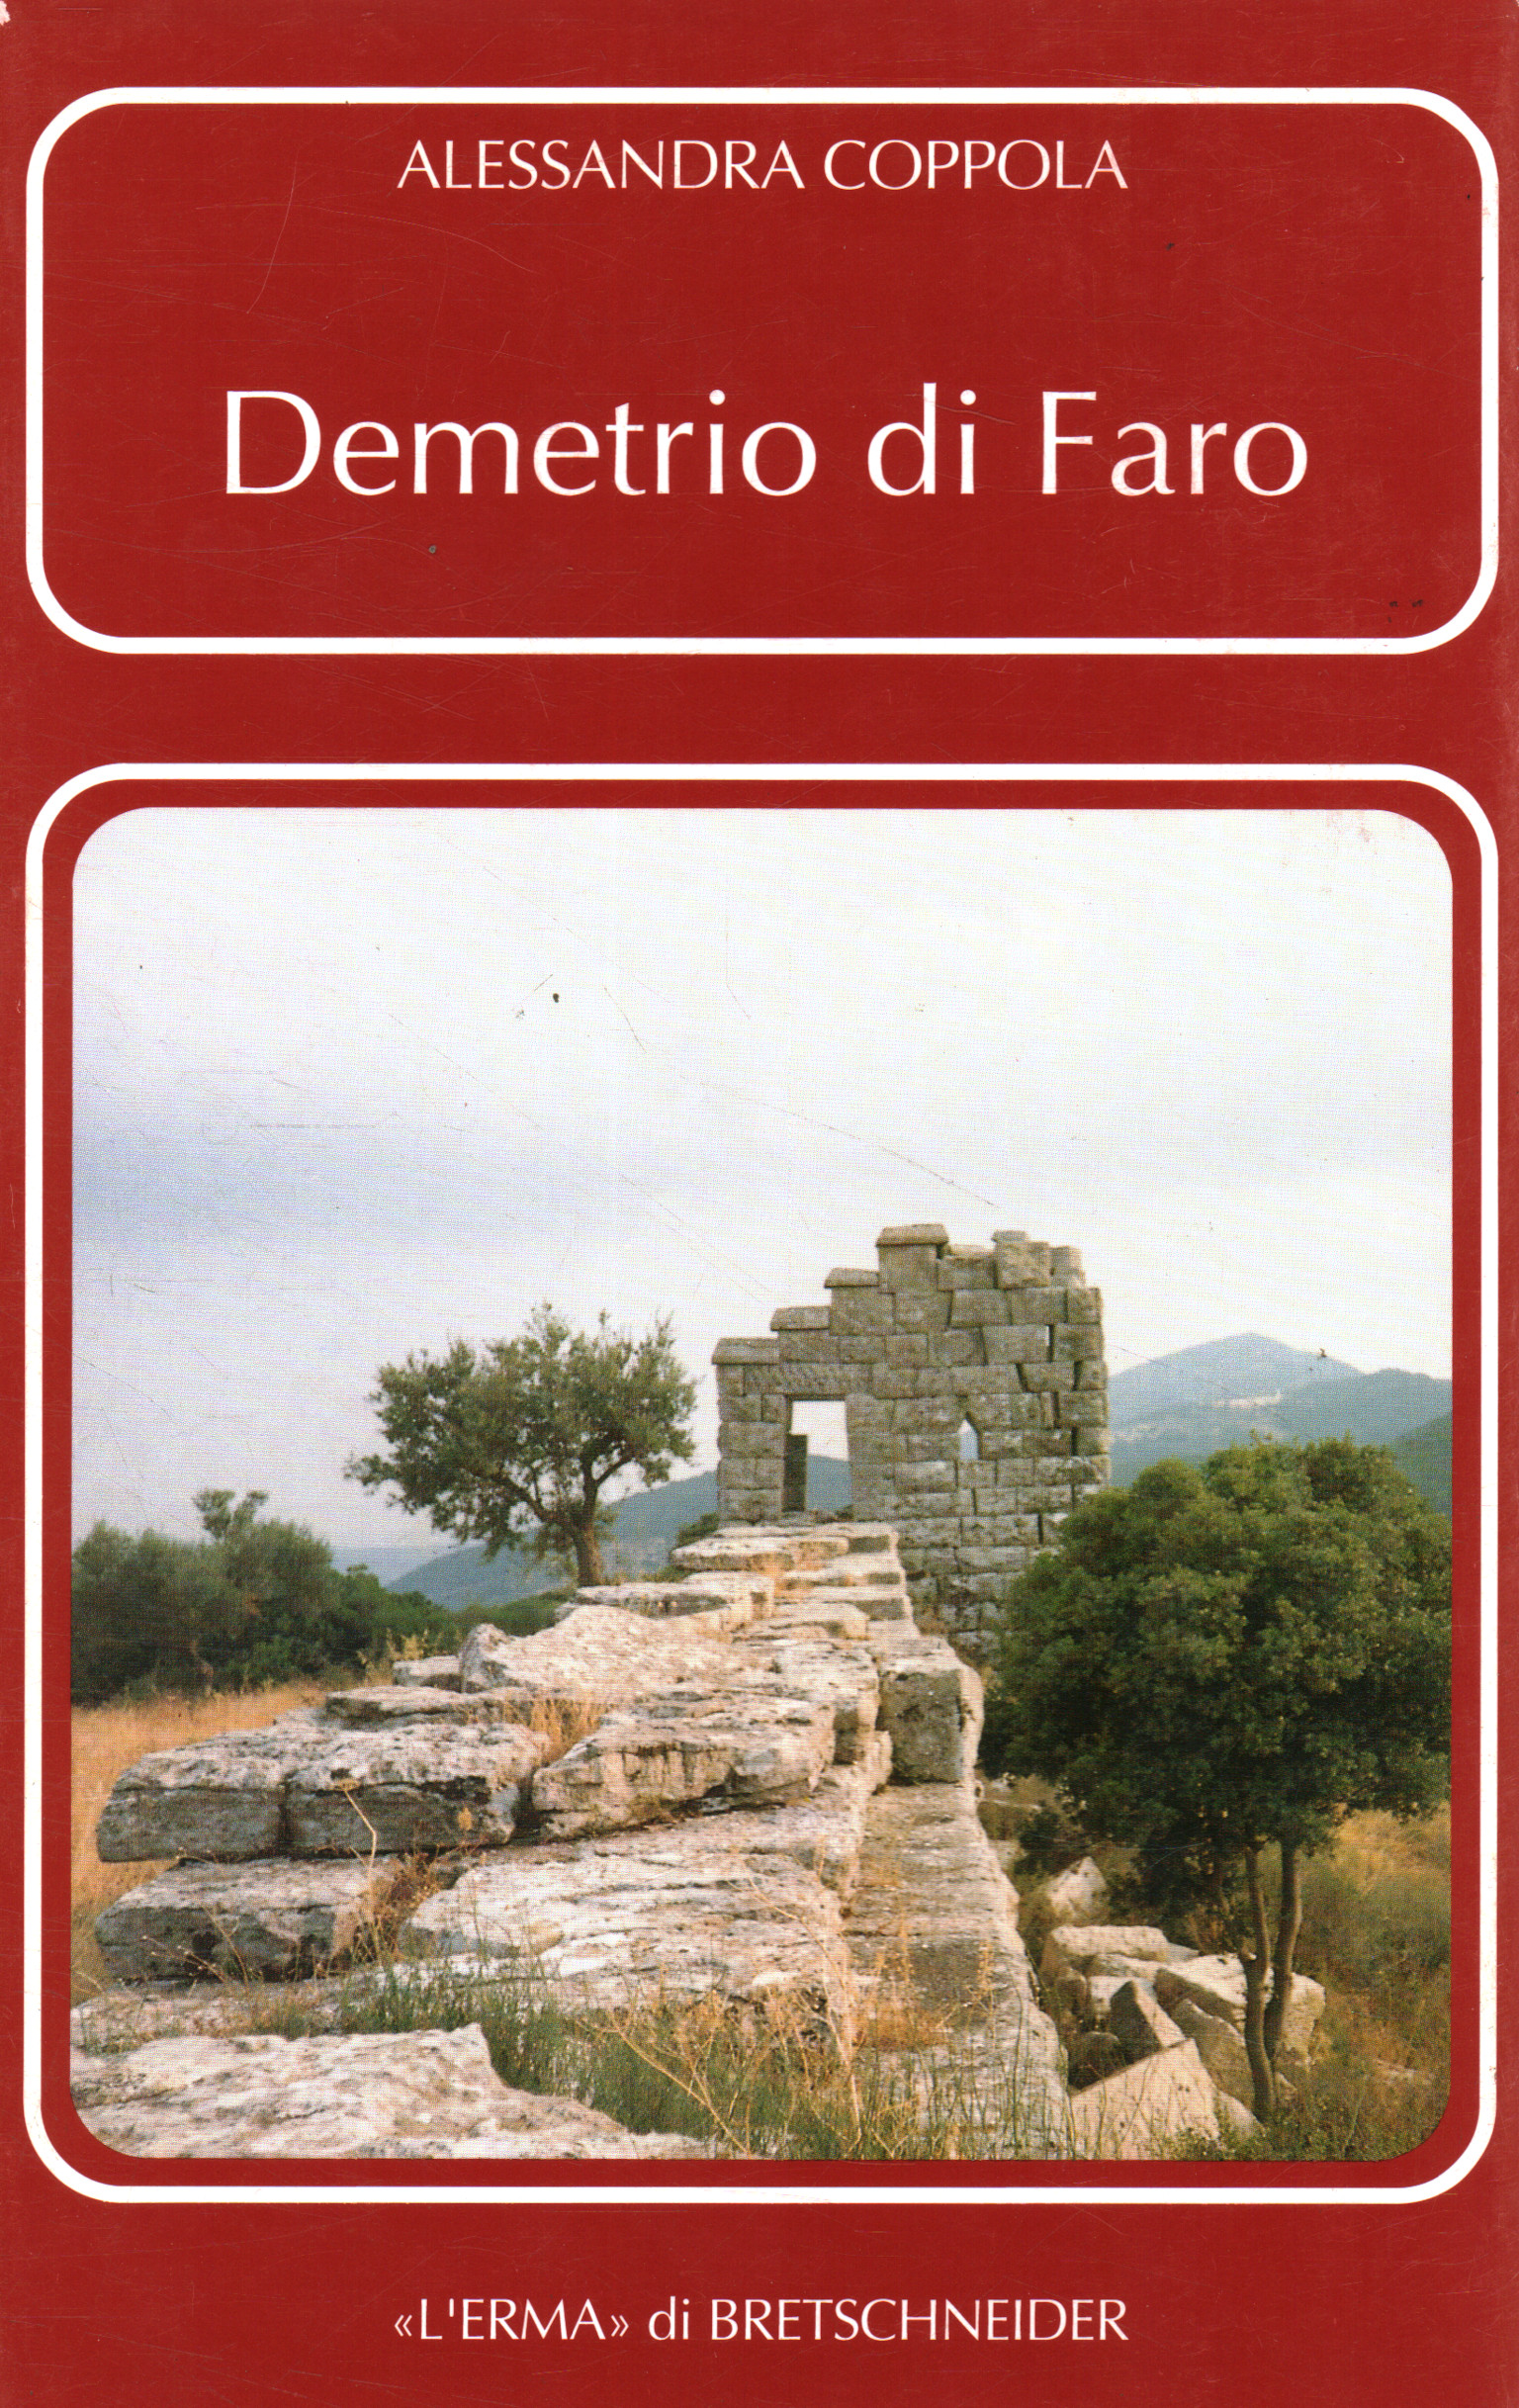 Demetrio de Faros